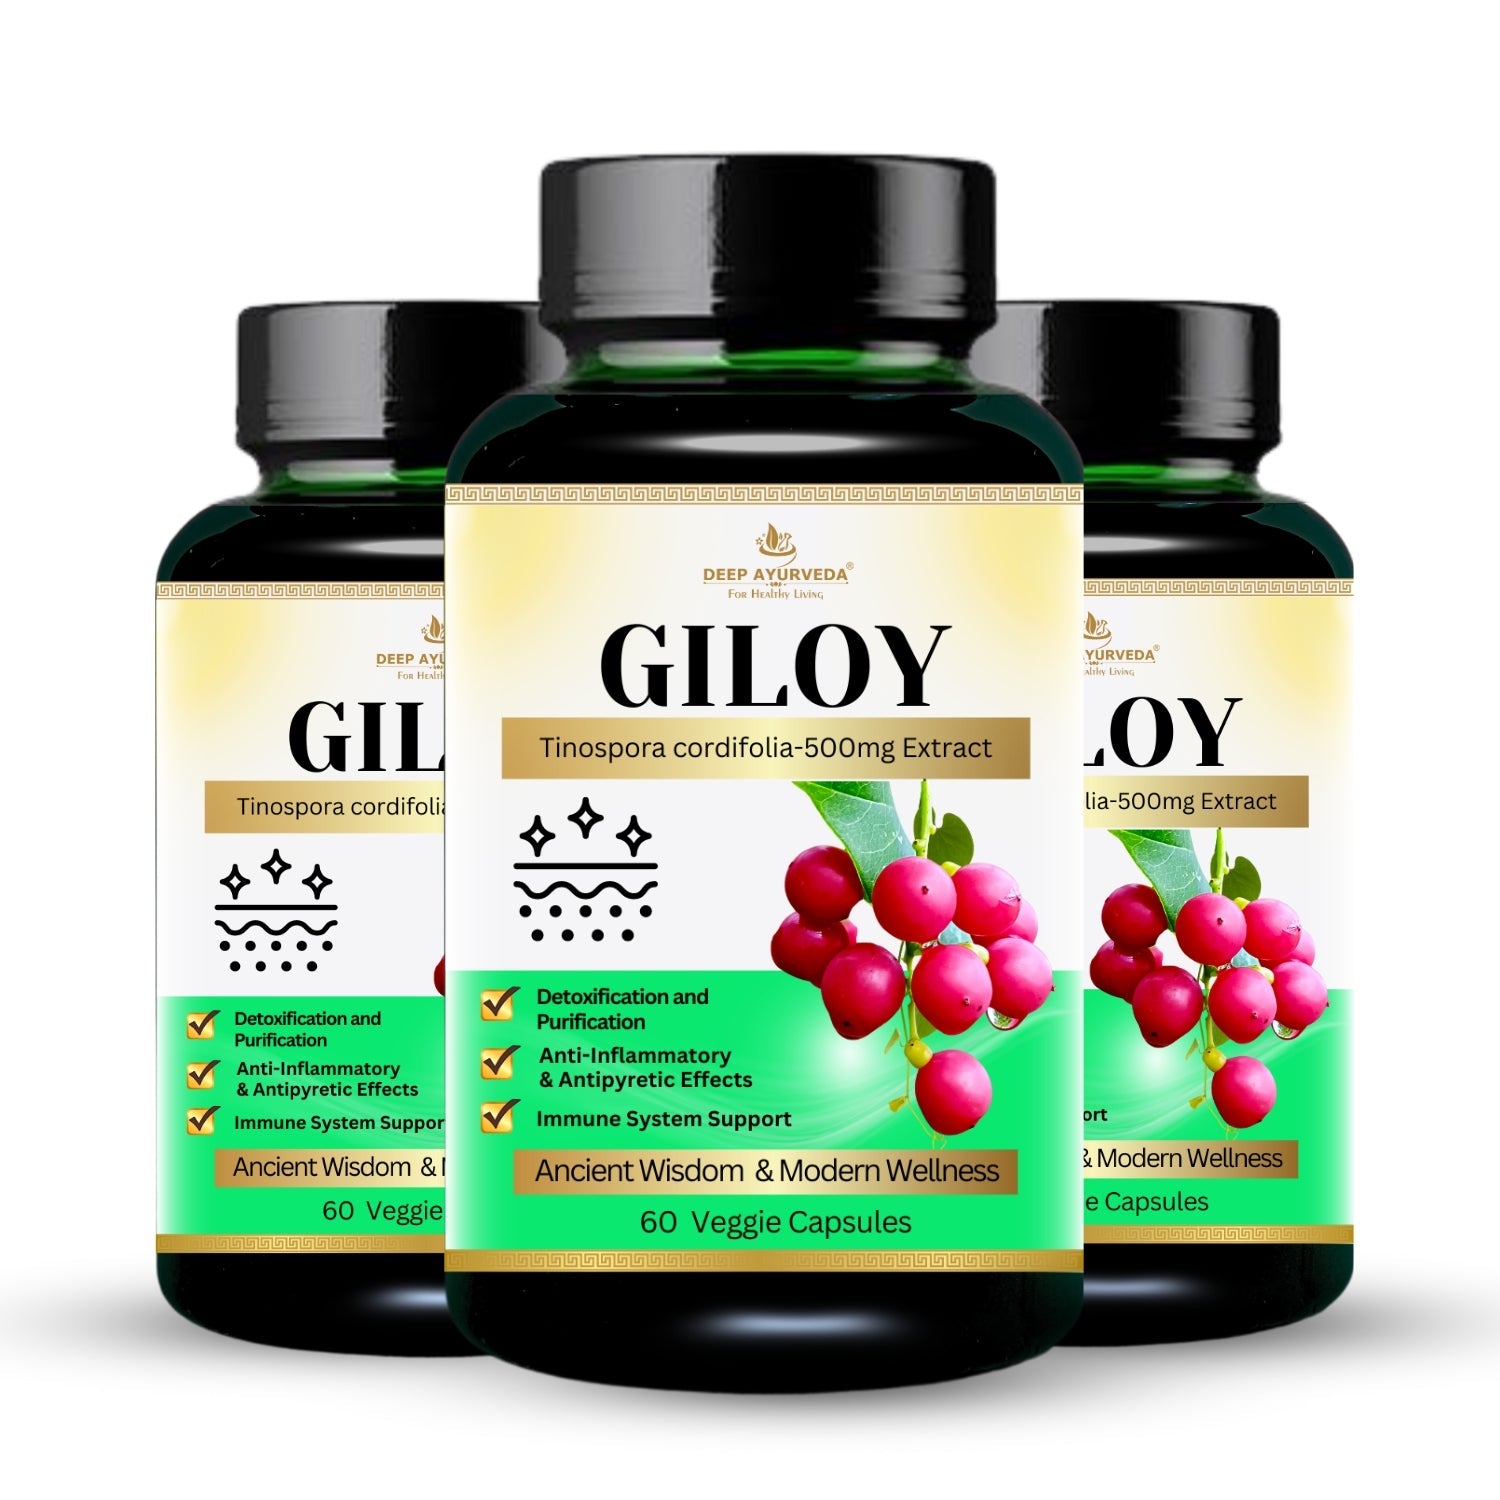 Giloy (Tinospora cordifolia) Vegan Capsule Pack 3